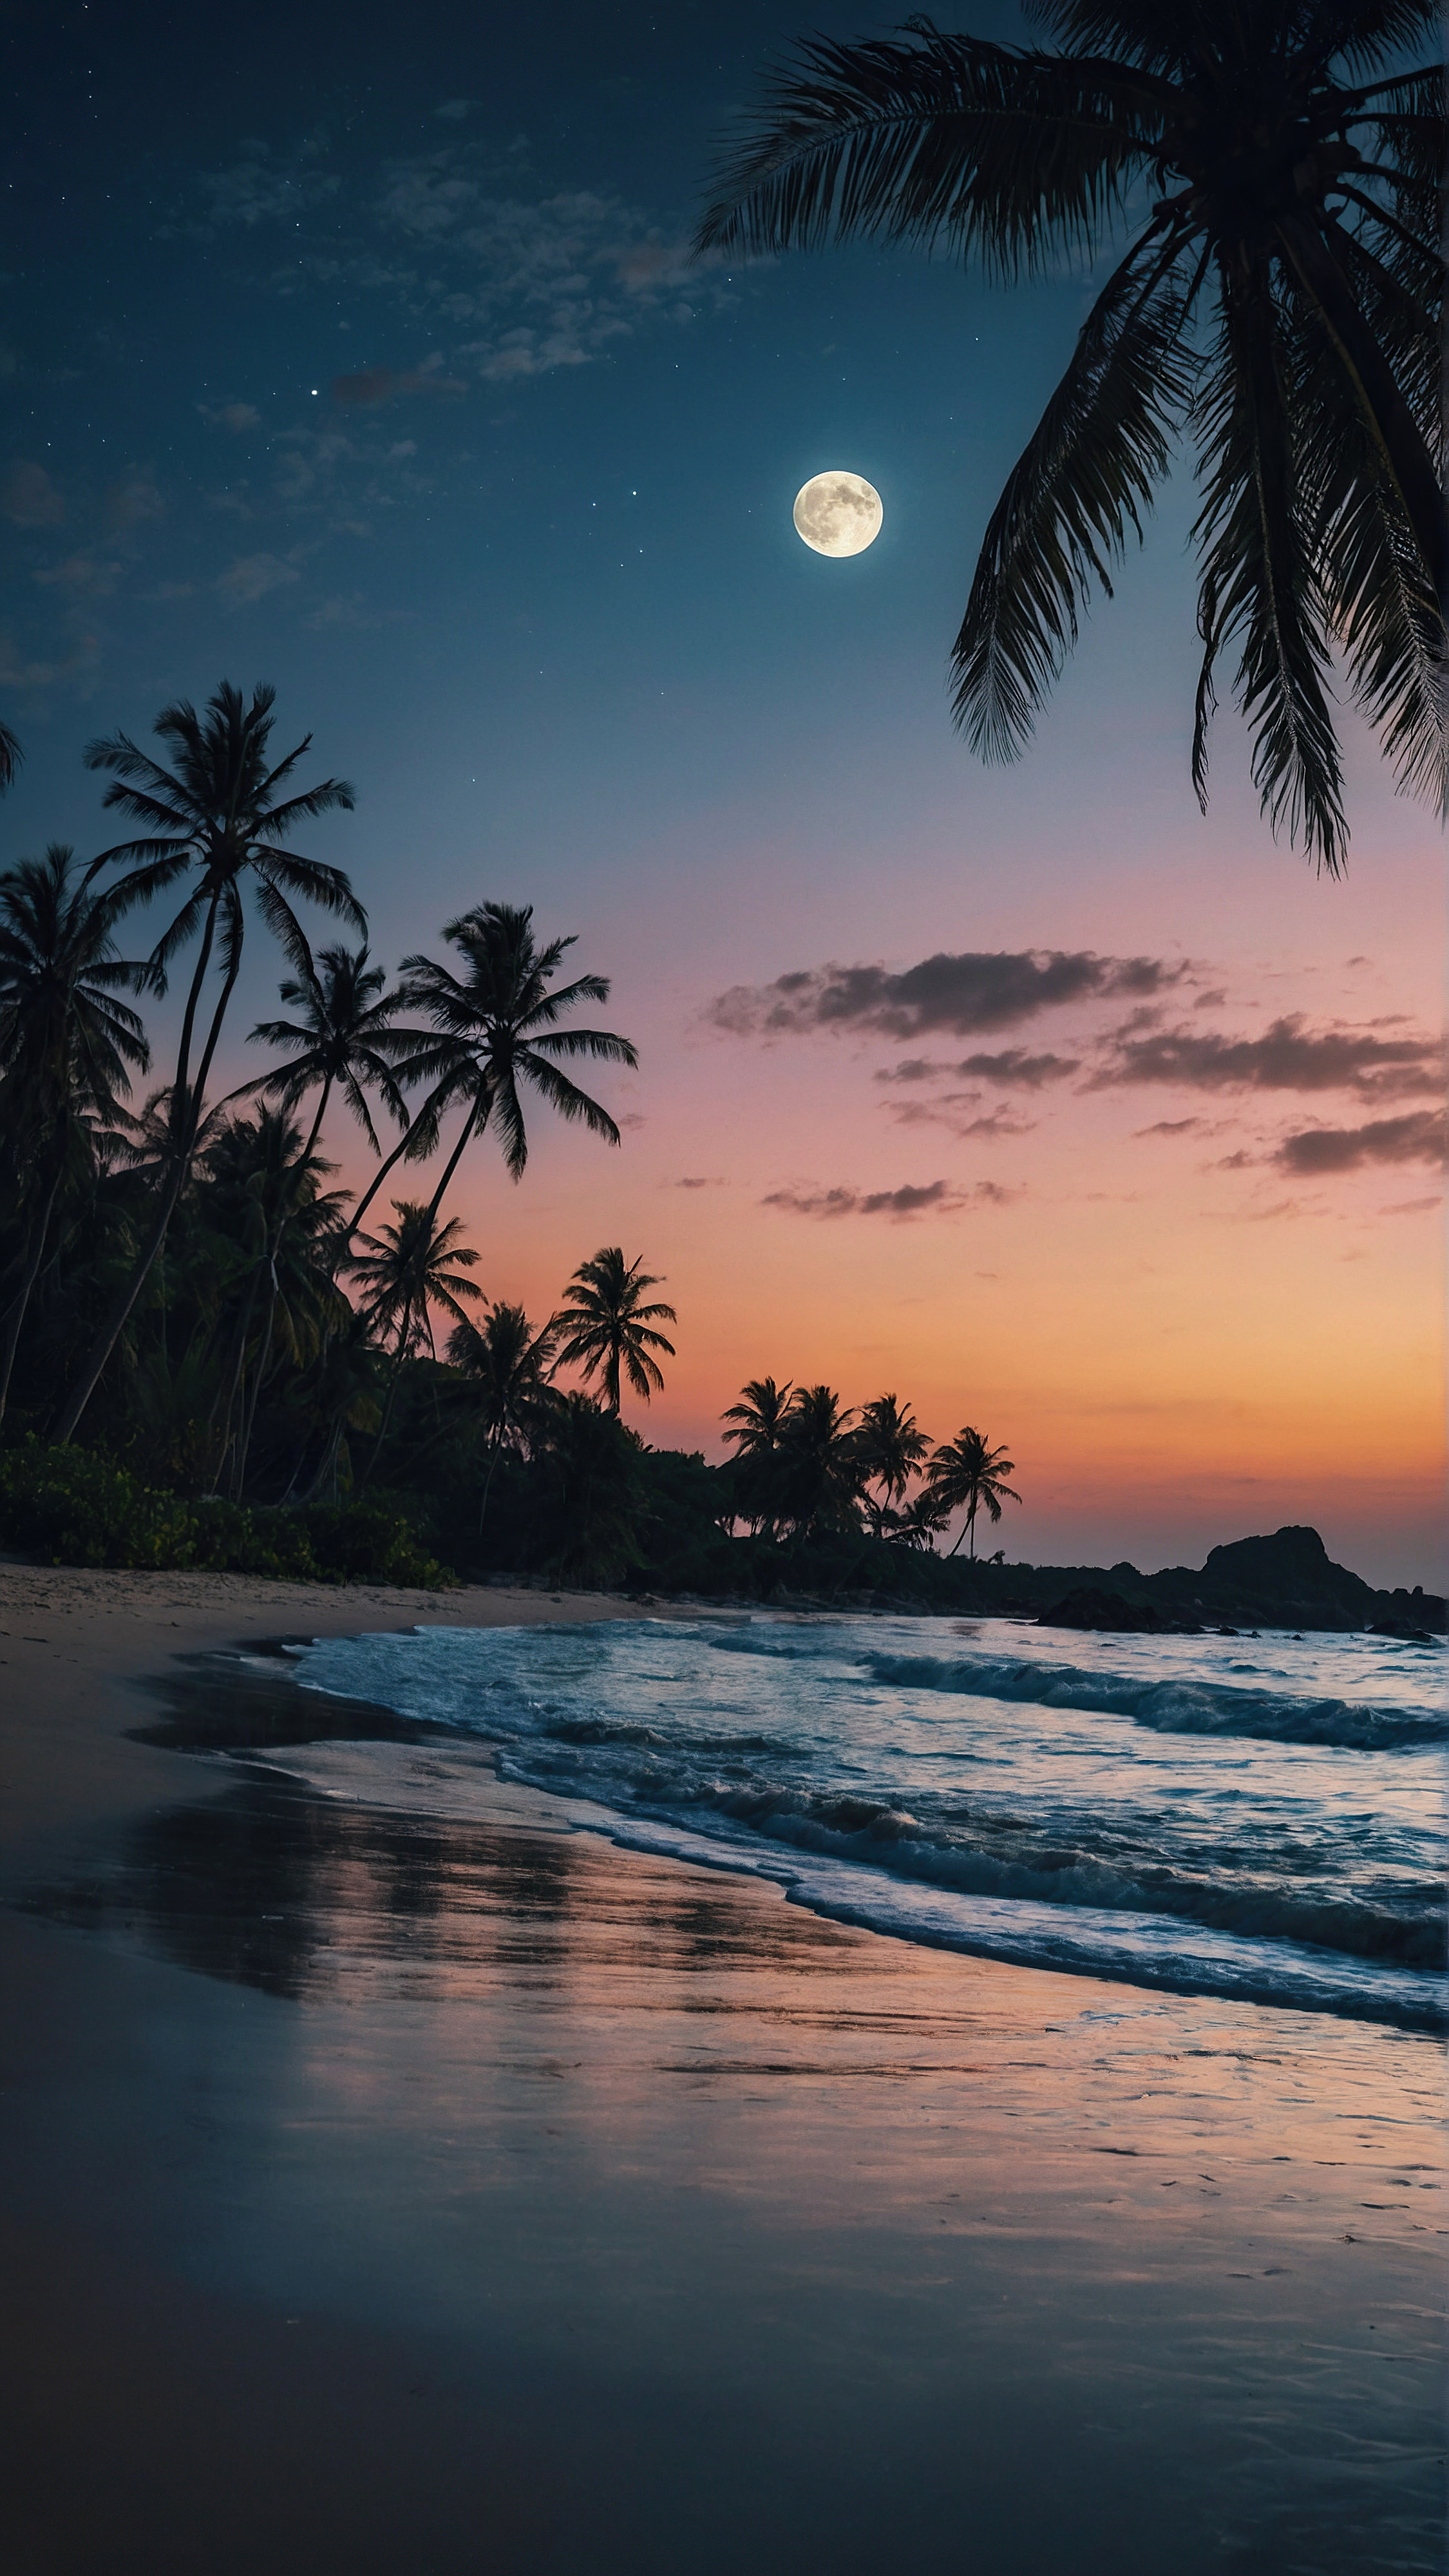 Découvrez le charme tropical de notre beau fond d'écran pour iPhone en 4K, où une grande lune illumine une scène de plage envoûtante au crépuscule, se reflétant sur les vagues qui clapotent doucement et mettant en valeur les silhouettes des palmiers dans ce paysage serein.